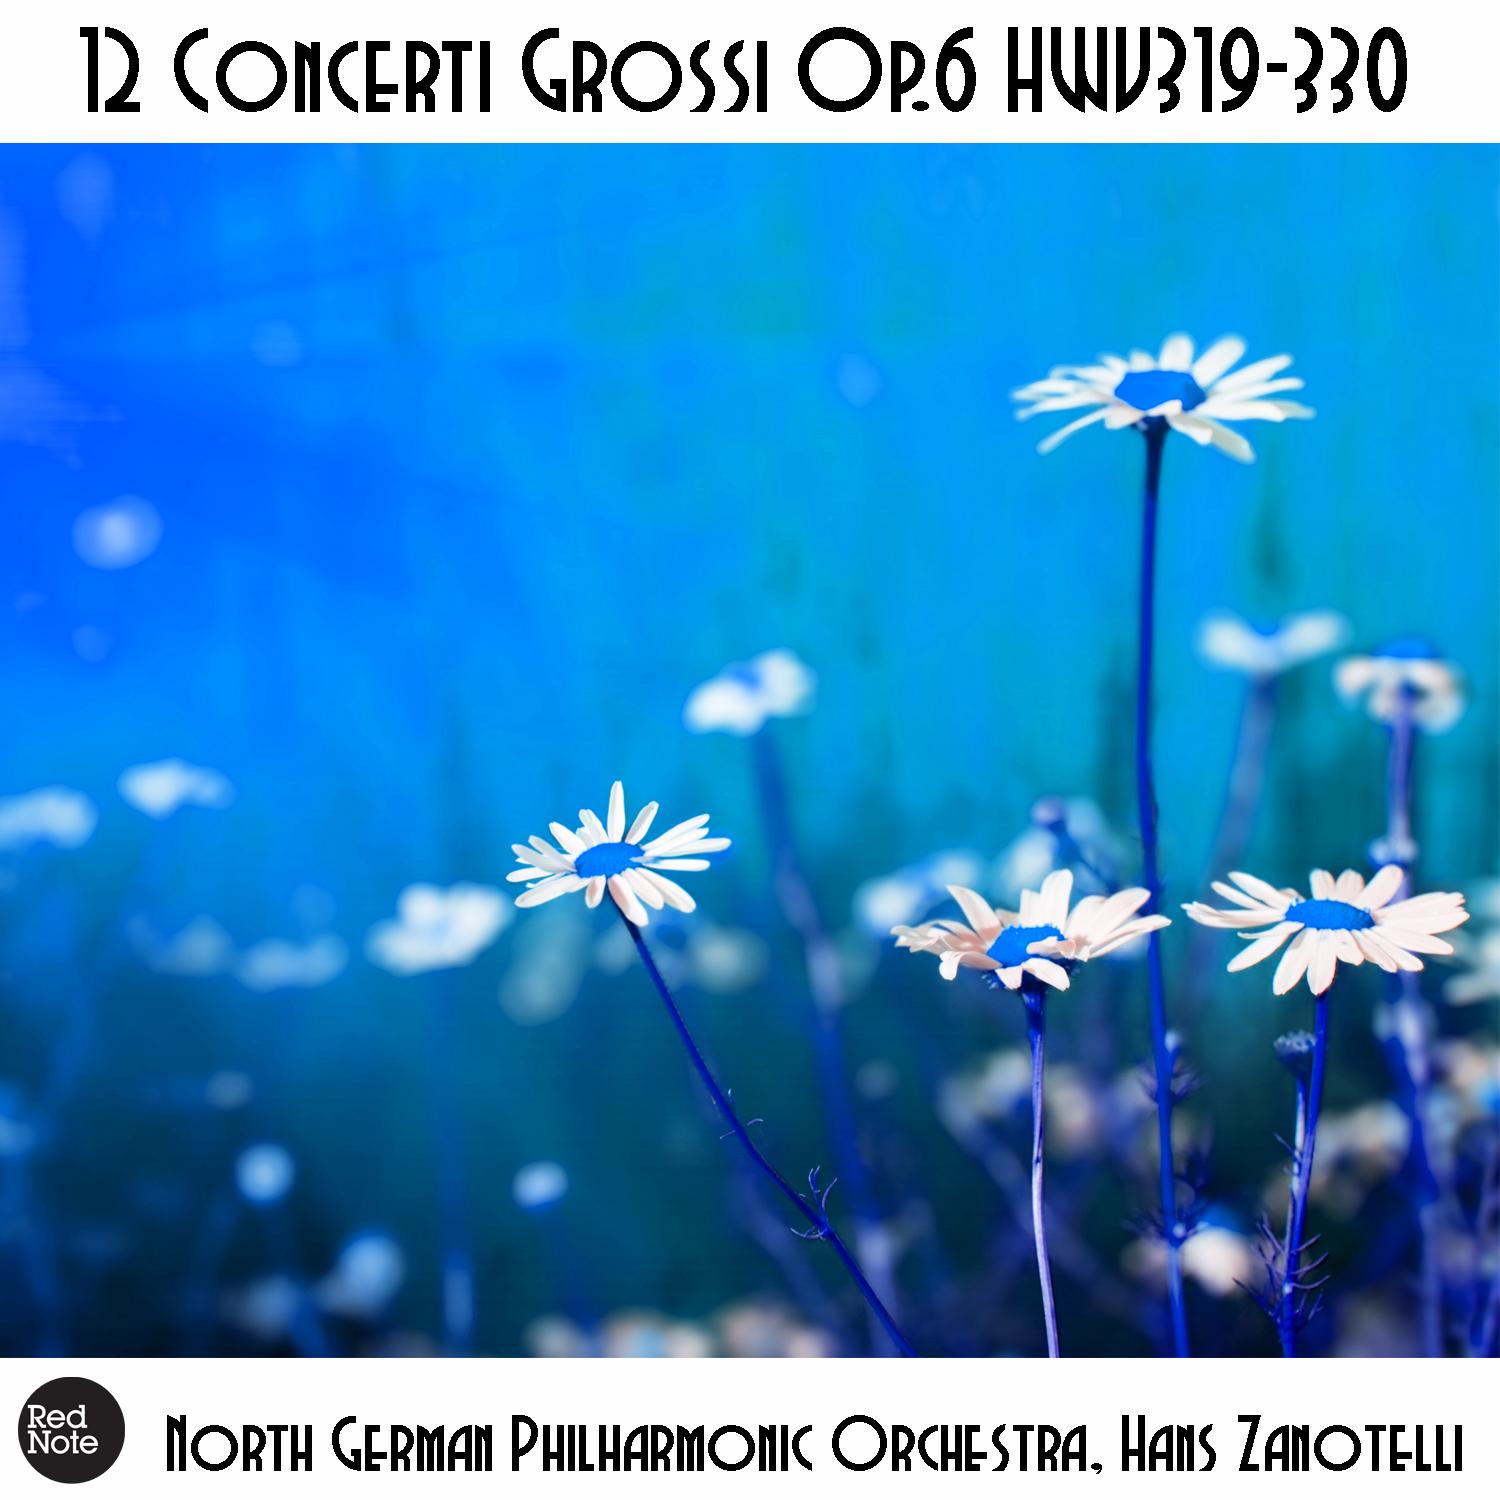 Concerti Grossi No. 11, Op. 6 HWV329: II. Allegro